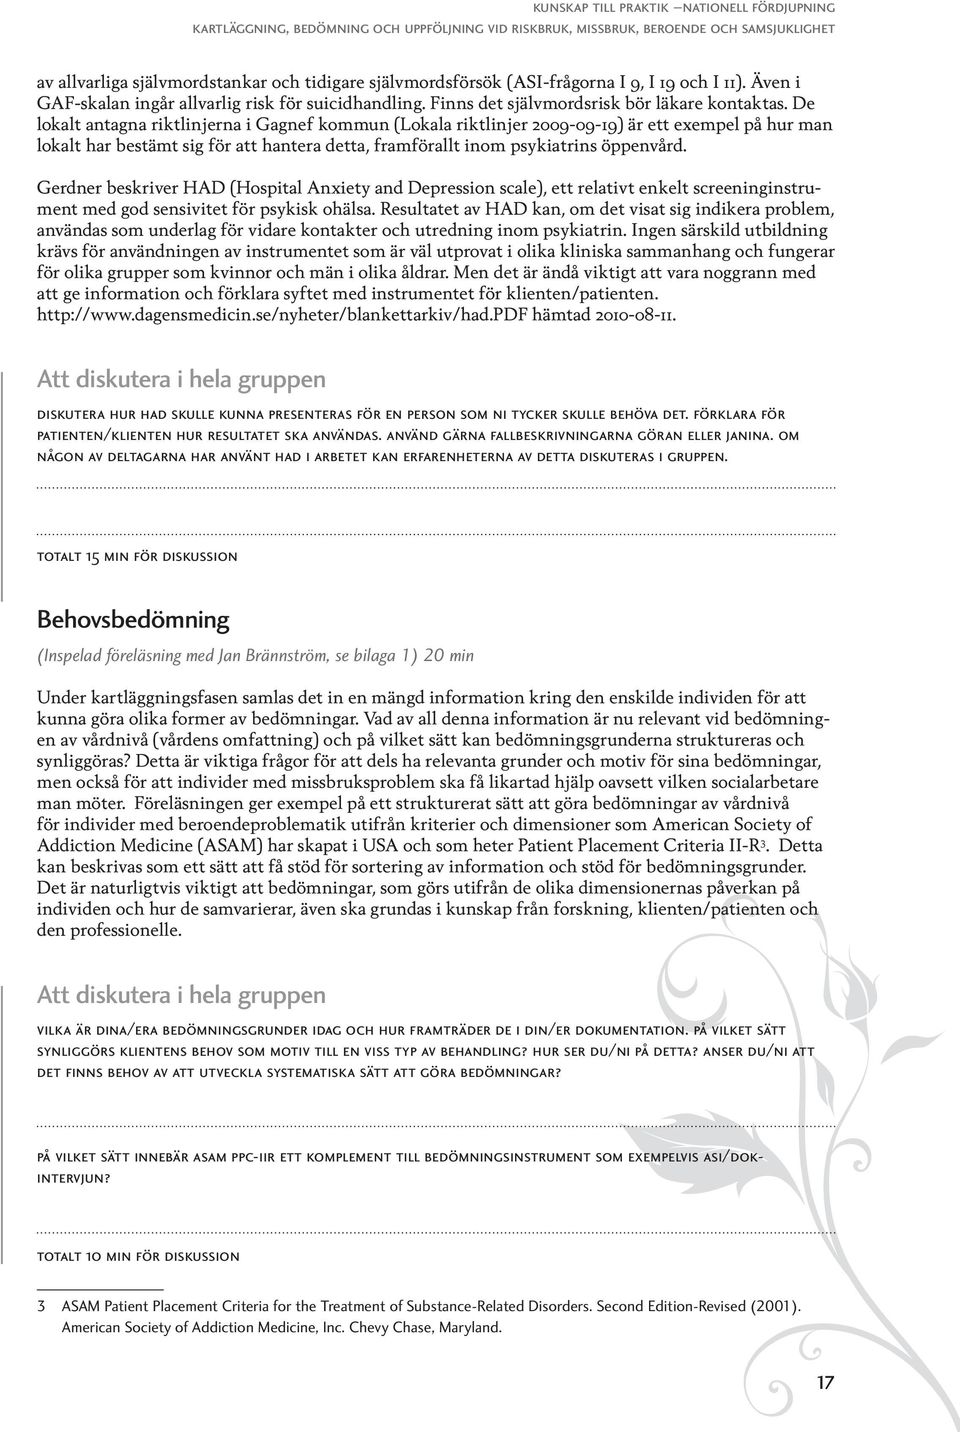 De lokalt antagna riktlinjerna i Gagnef kommun (Lokala riktlinjer 2009-09-19) är ett exempel på hur man lokalt har bestämt sig för att hantera detta, framförallt inom psykiatrins öppenvård.